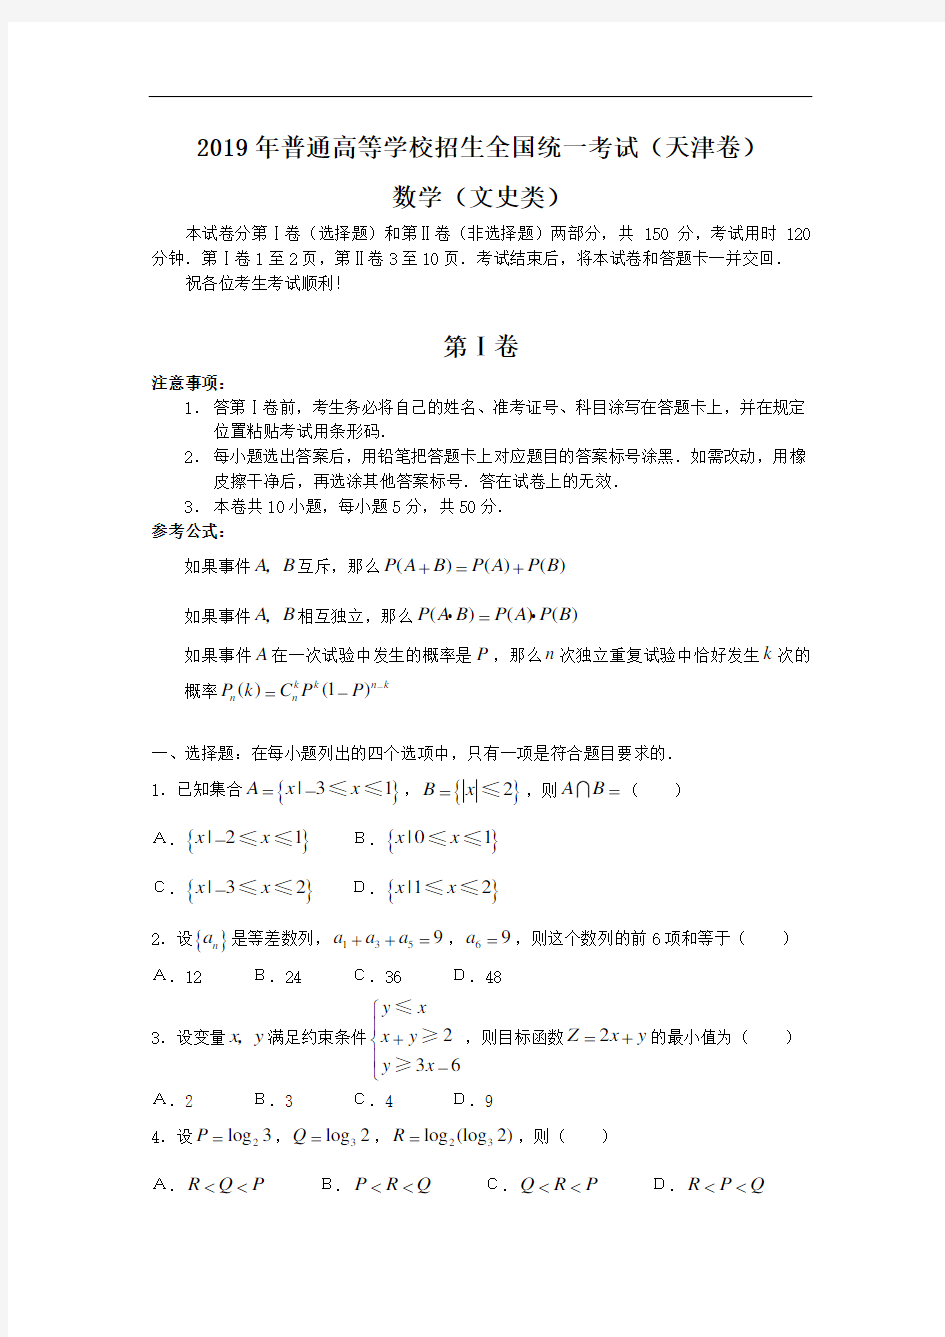 2006年高考文科数学试题(天津卷)